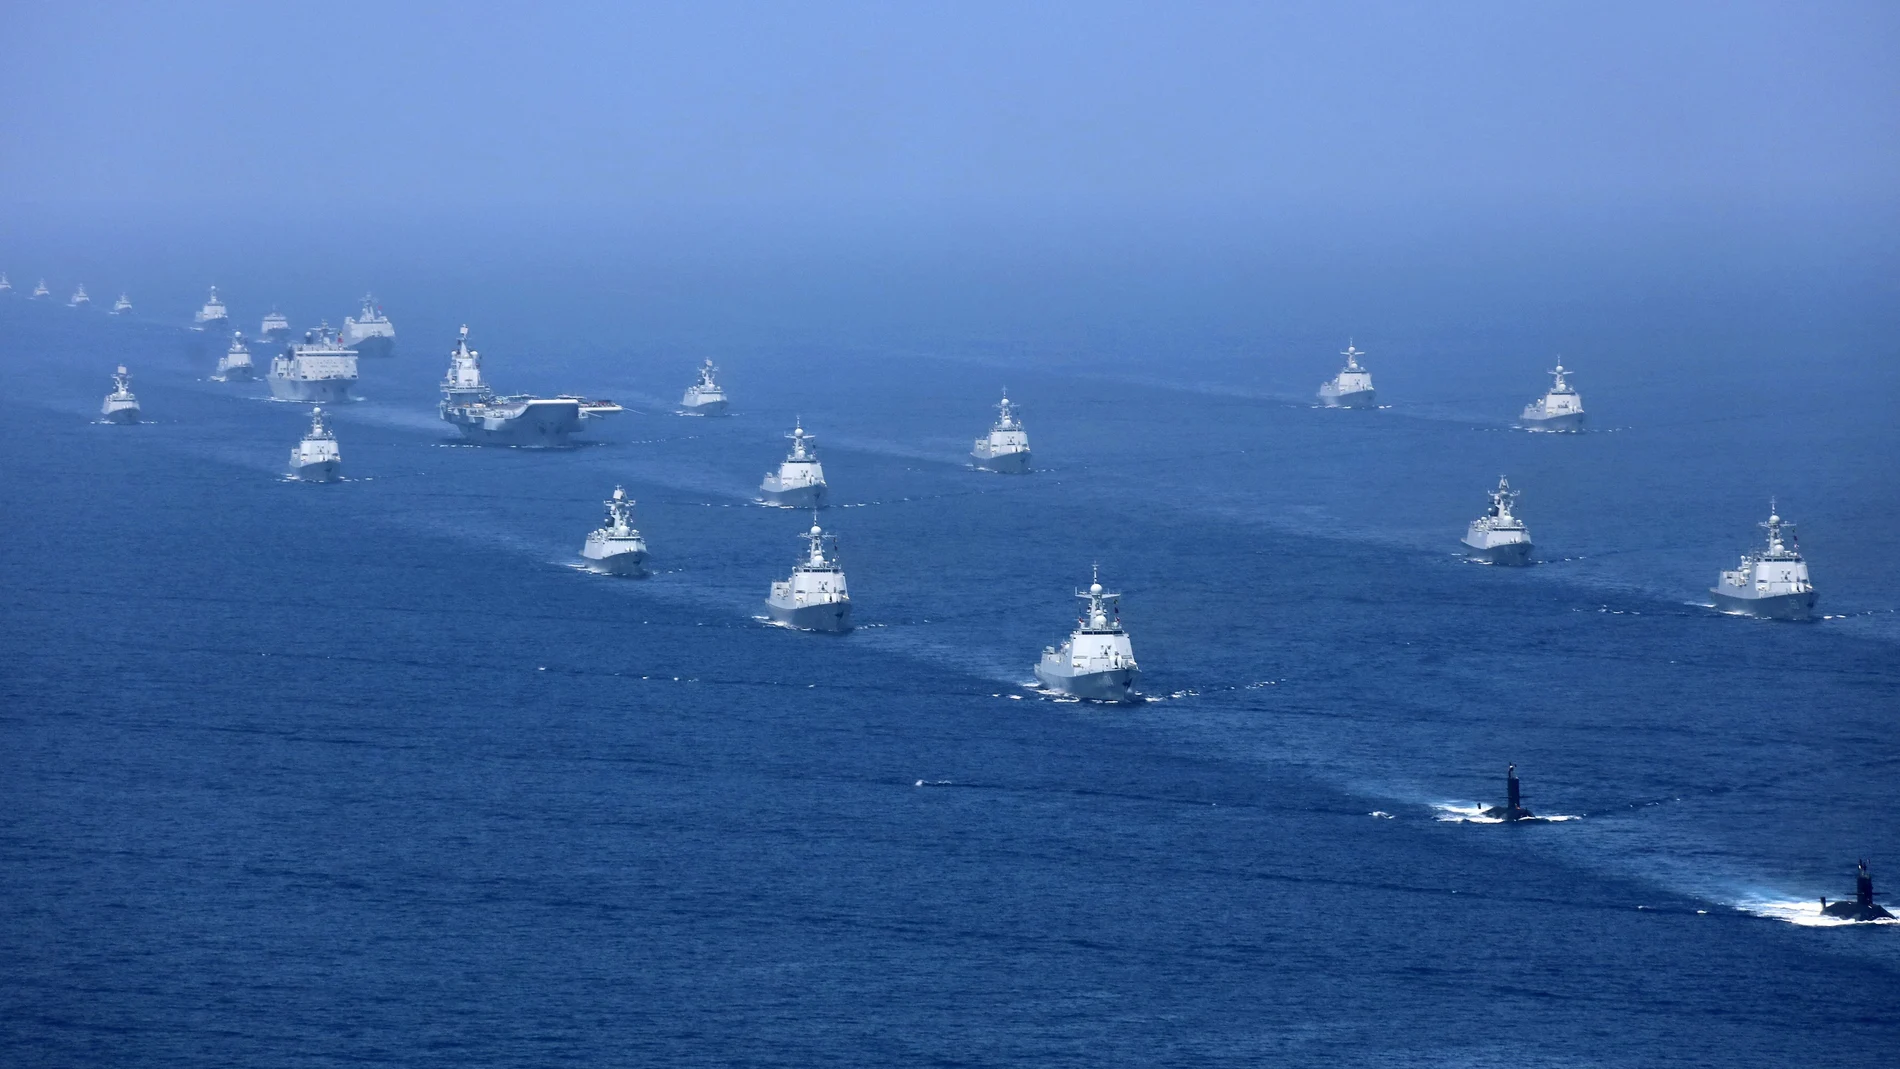 Buques de guerra y aviones de combate de la Armada del Ejército Popular de Liberación de China (EPL) participan en una exhibición militar en el Mar de China Meridional